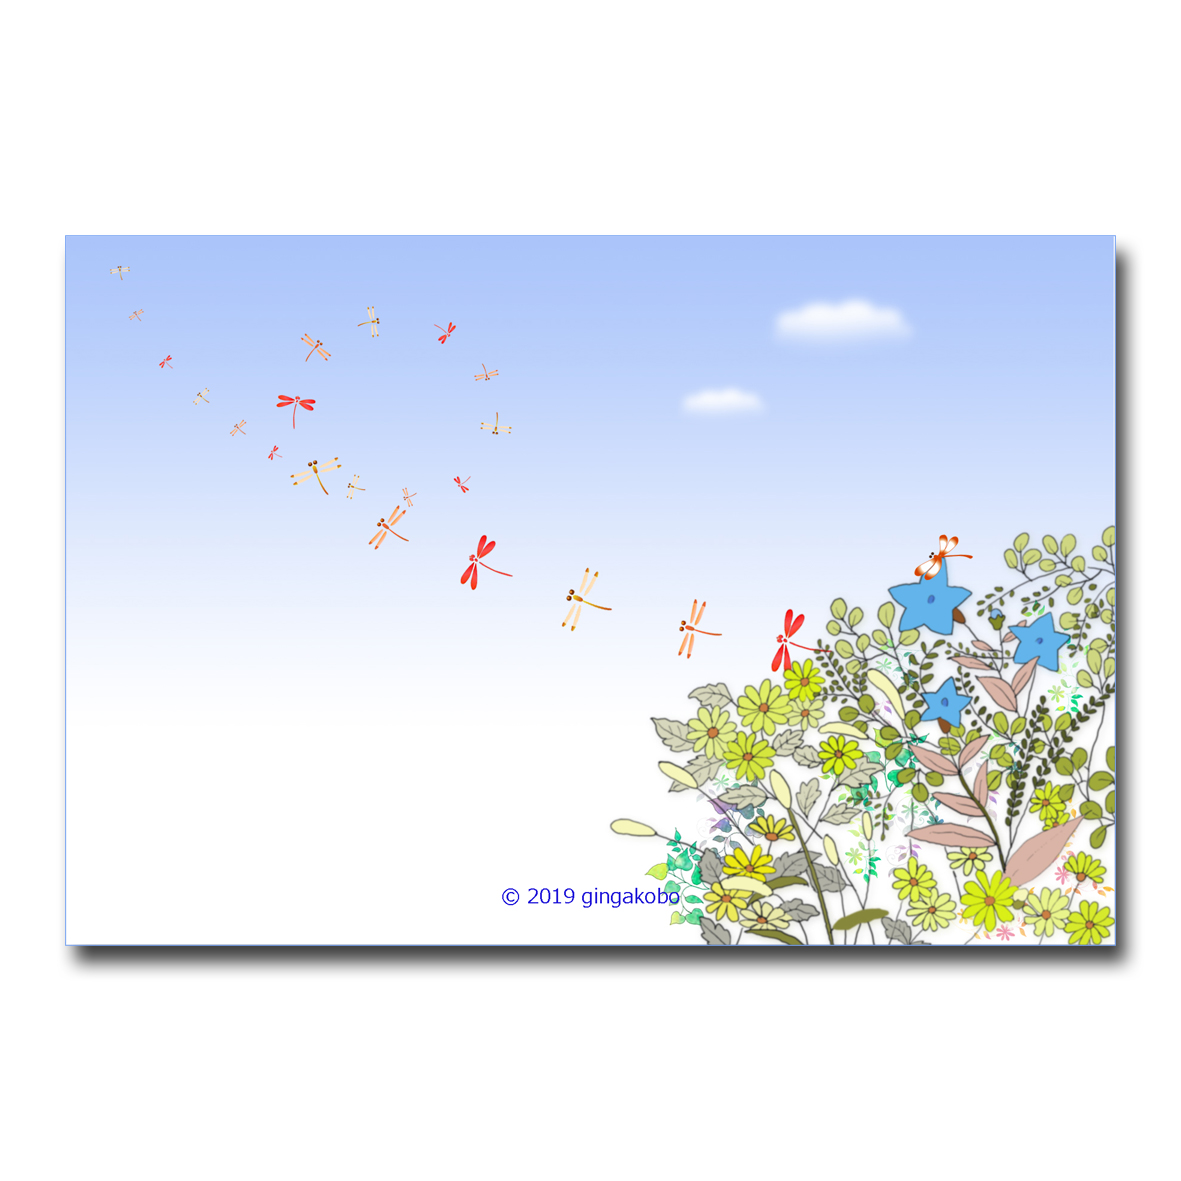 秋日和のトンボゴコロ ほっこり癒しのイラストポストカード2枚組 No 841 Iichi ハンドメイド クラフト作品 手仕事品の通販